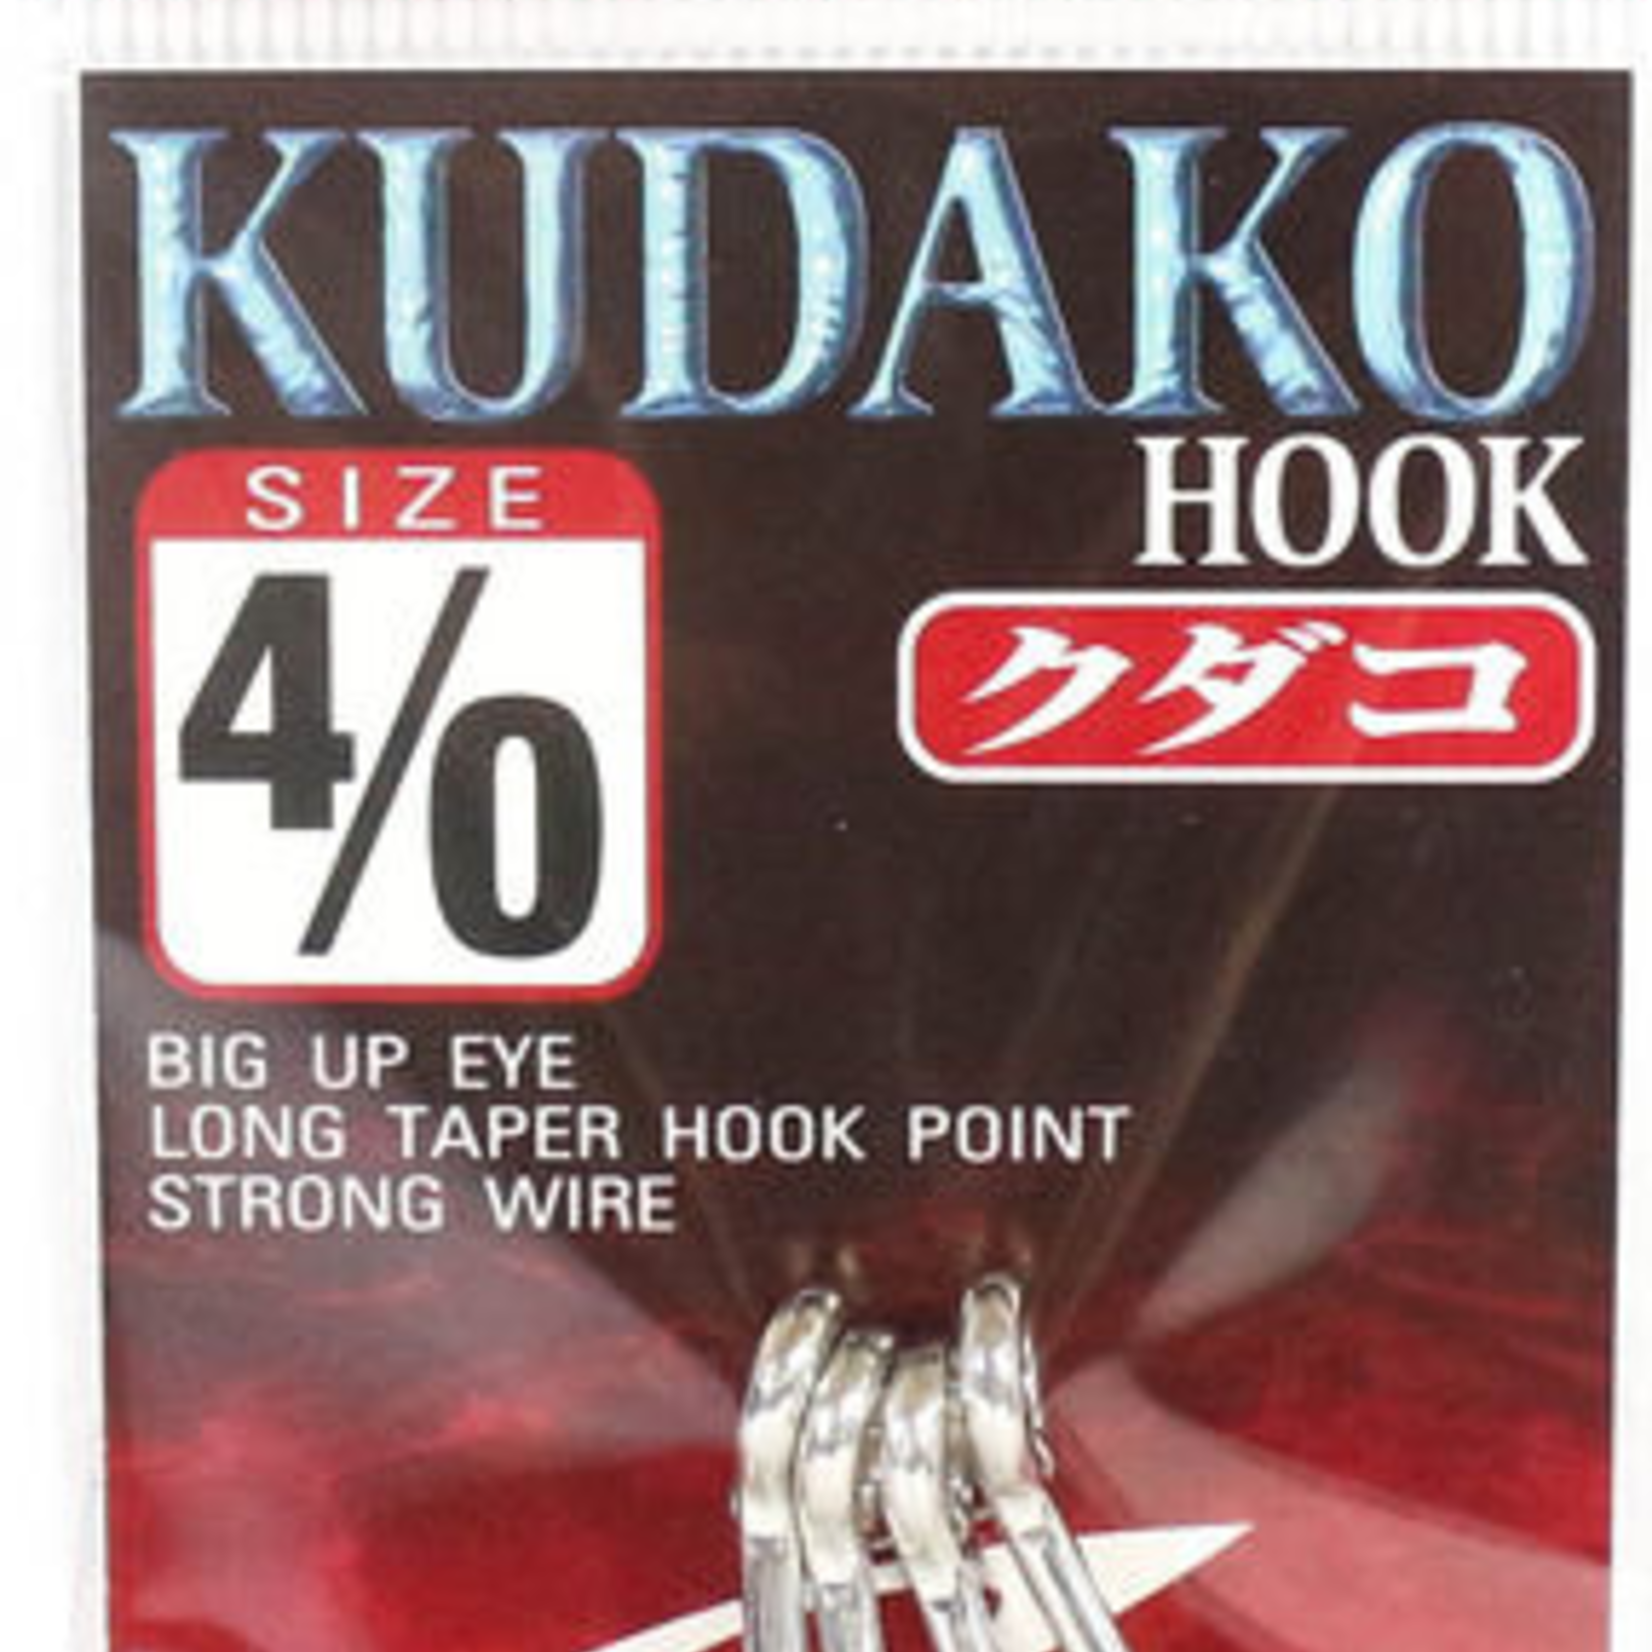 Shout Kudako Packed Hooks